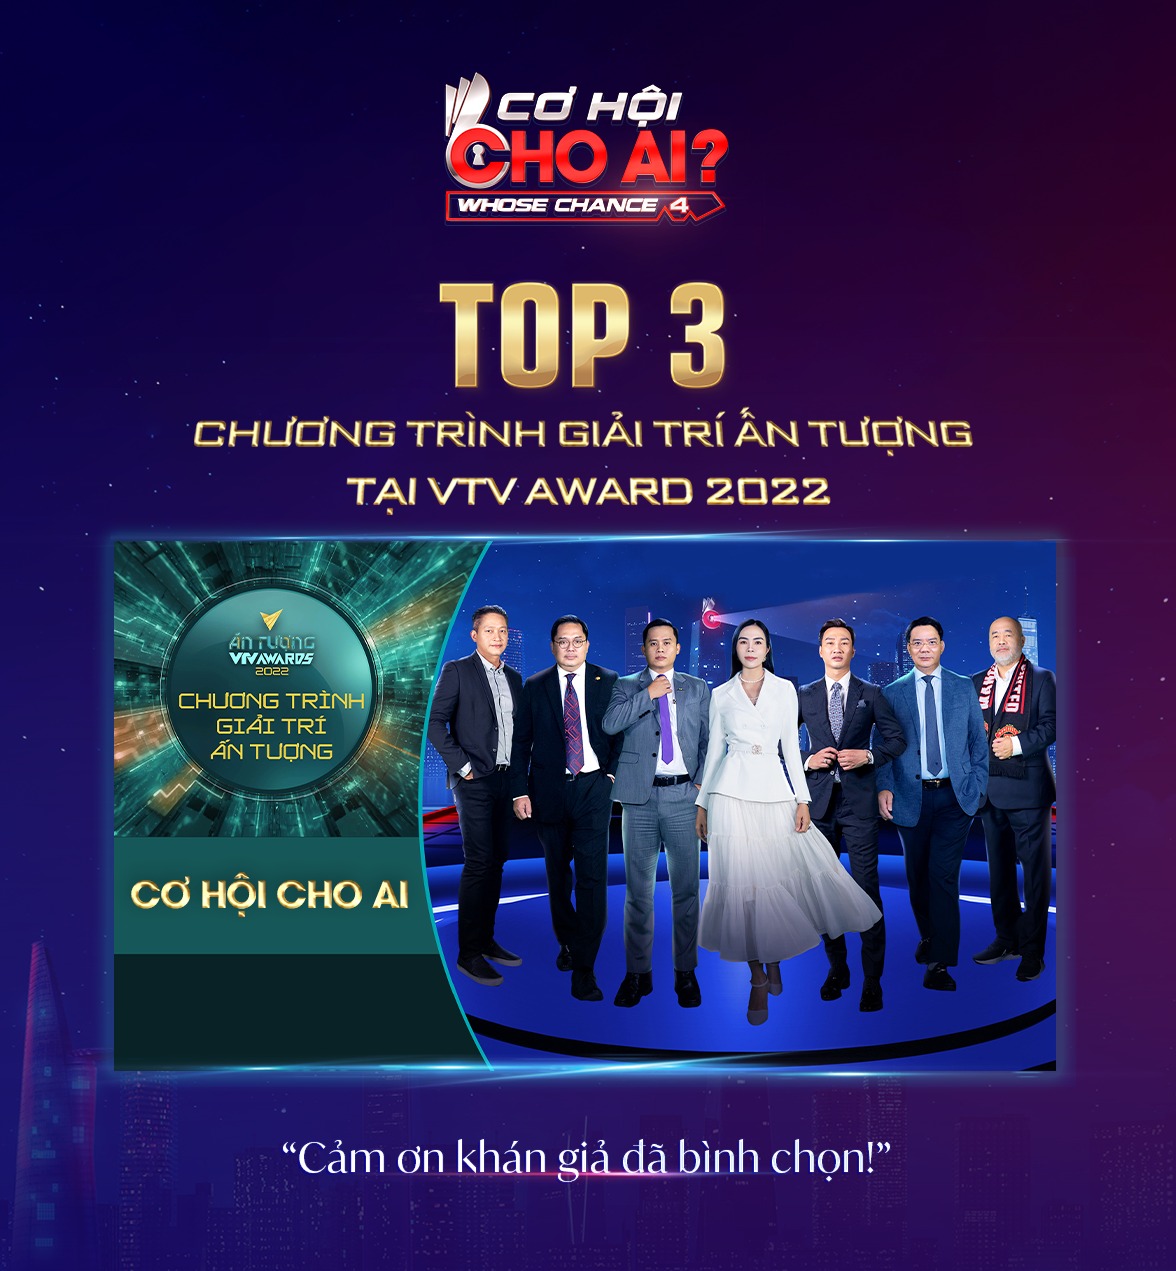 Cơ Hội Cho Ai – Whose Chance Vinh dự lọt Top 3 Hạng mục Chương trình Giải trí ấn tượng tại VTV AWARDS 2022️